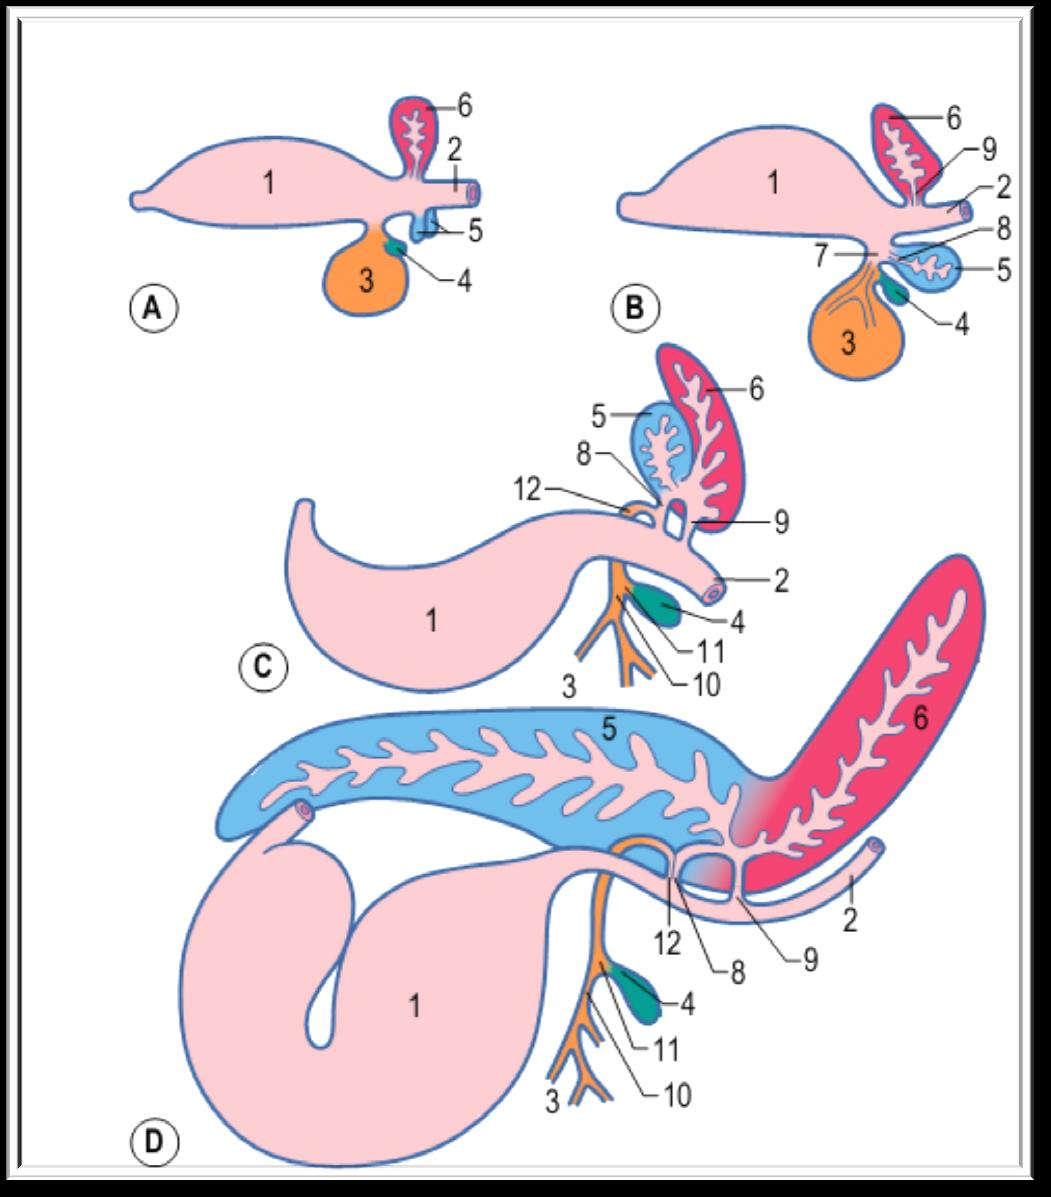 6. Broto pancreático dorsal 5.